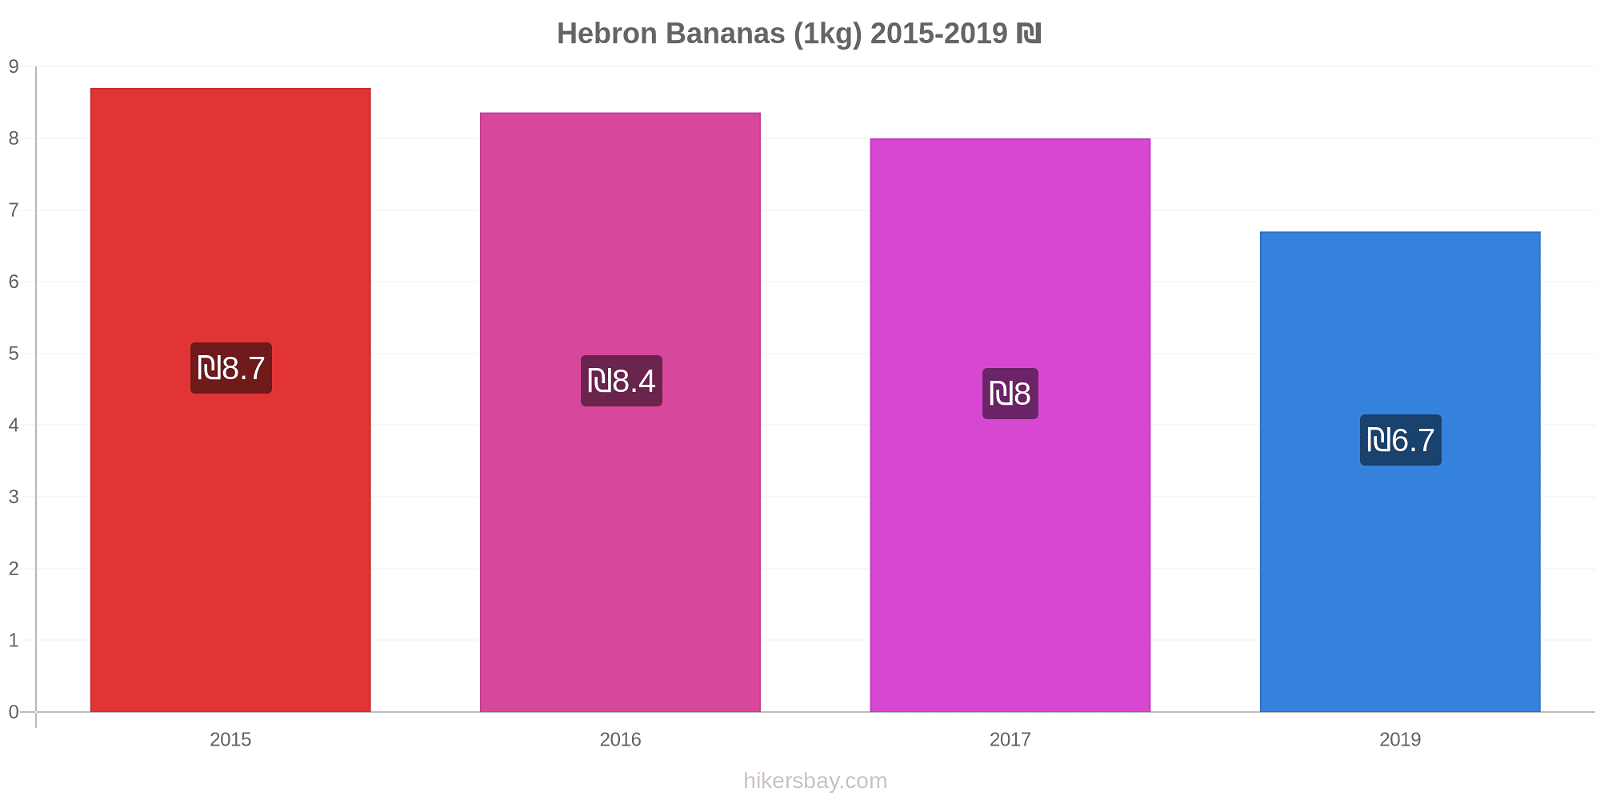 Hebron price changes Bananas (1kg) hikersbay.com